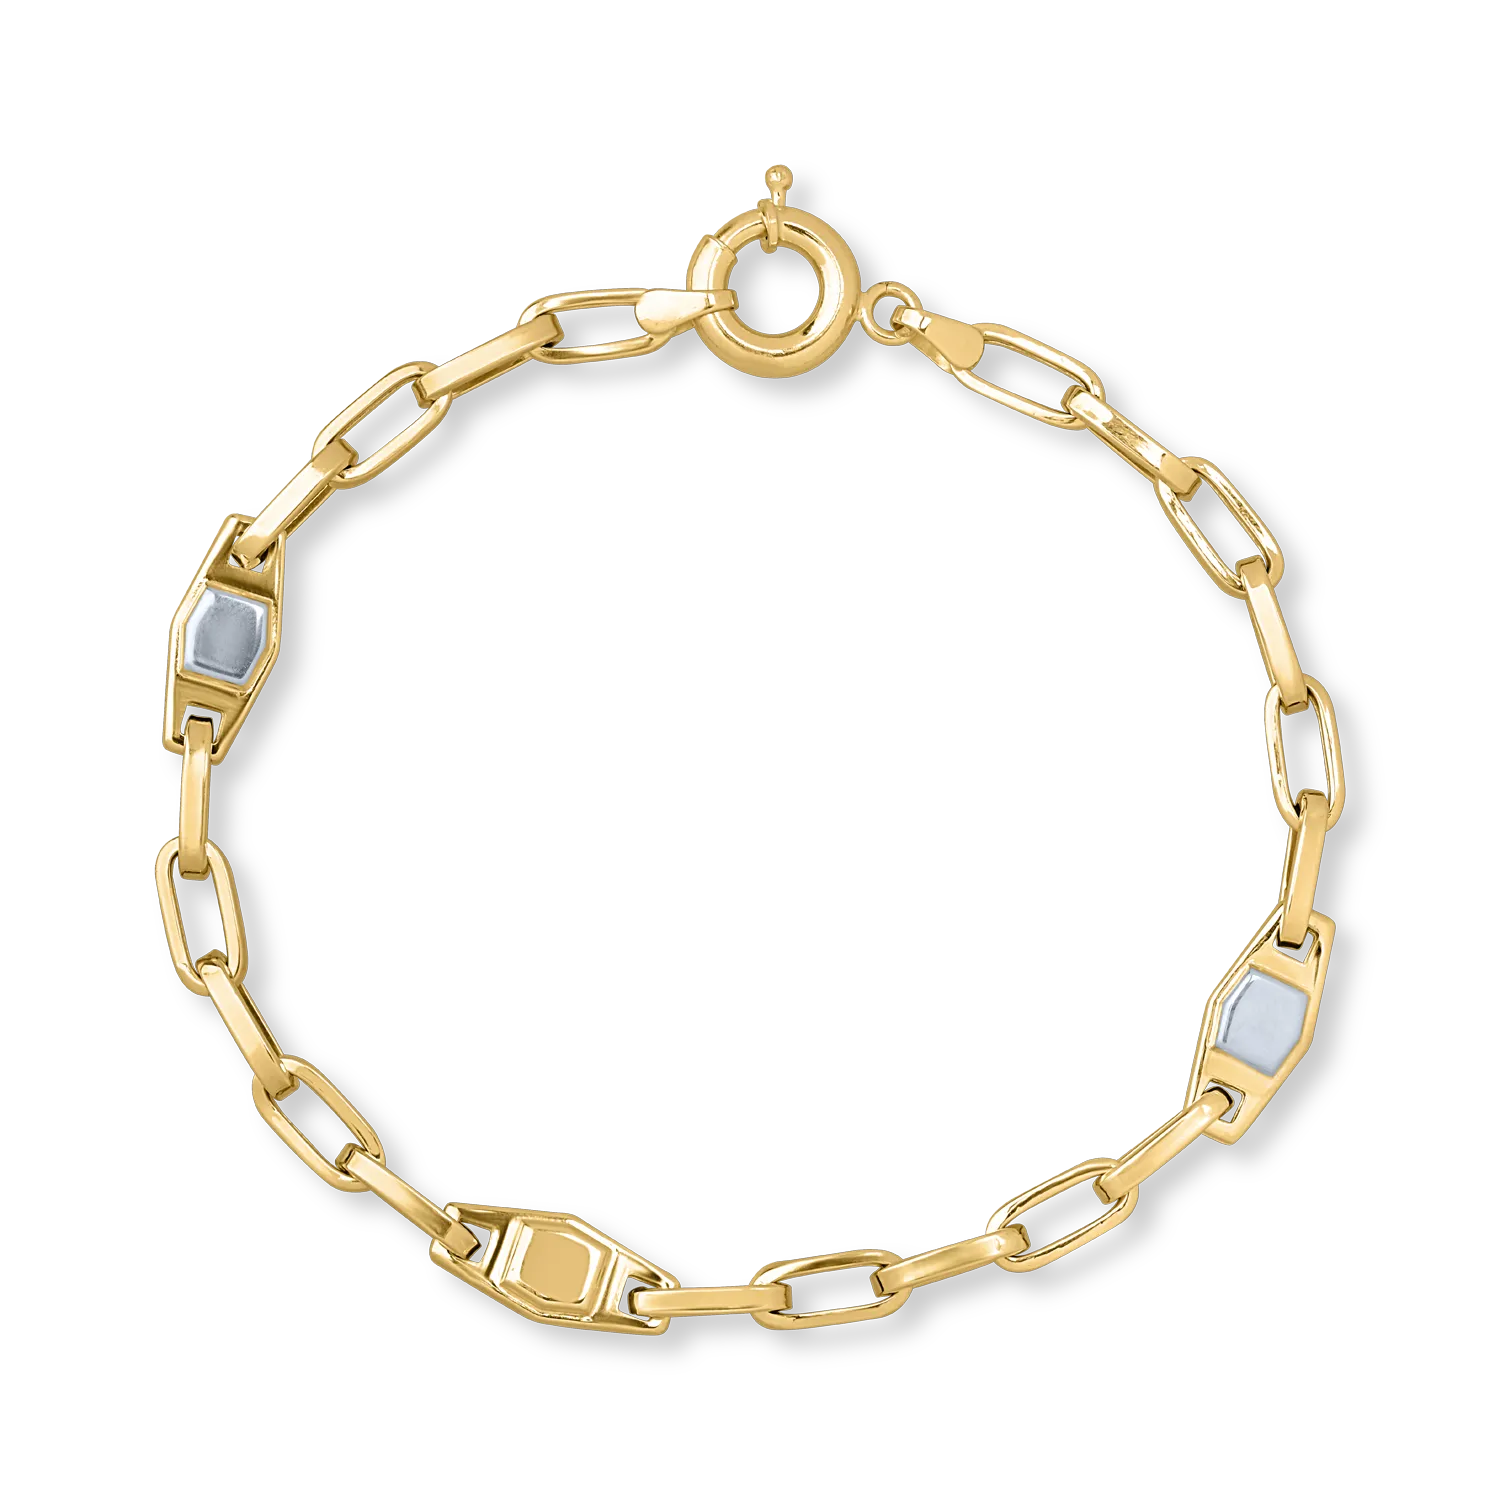 White-yellow gold bracelet